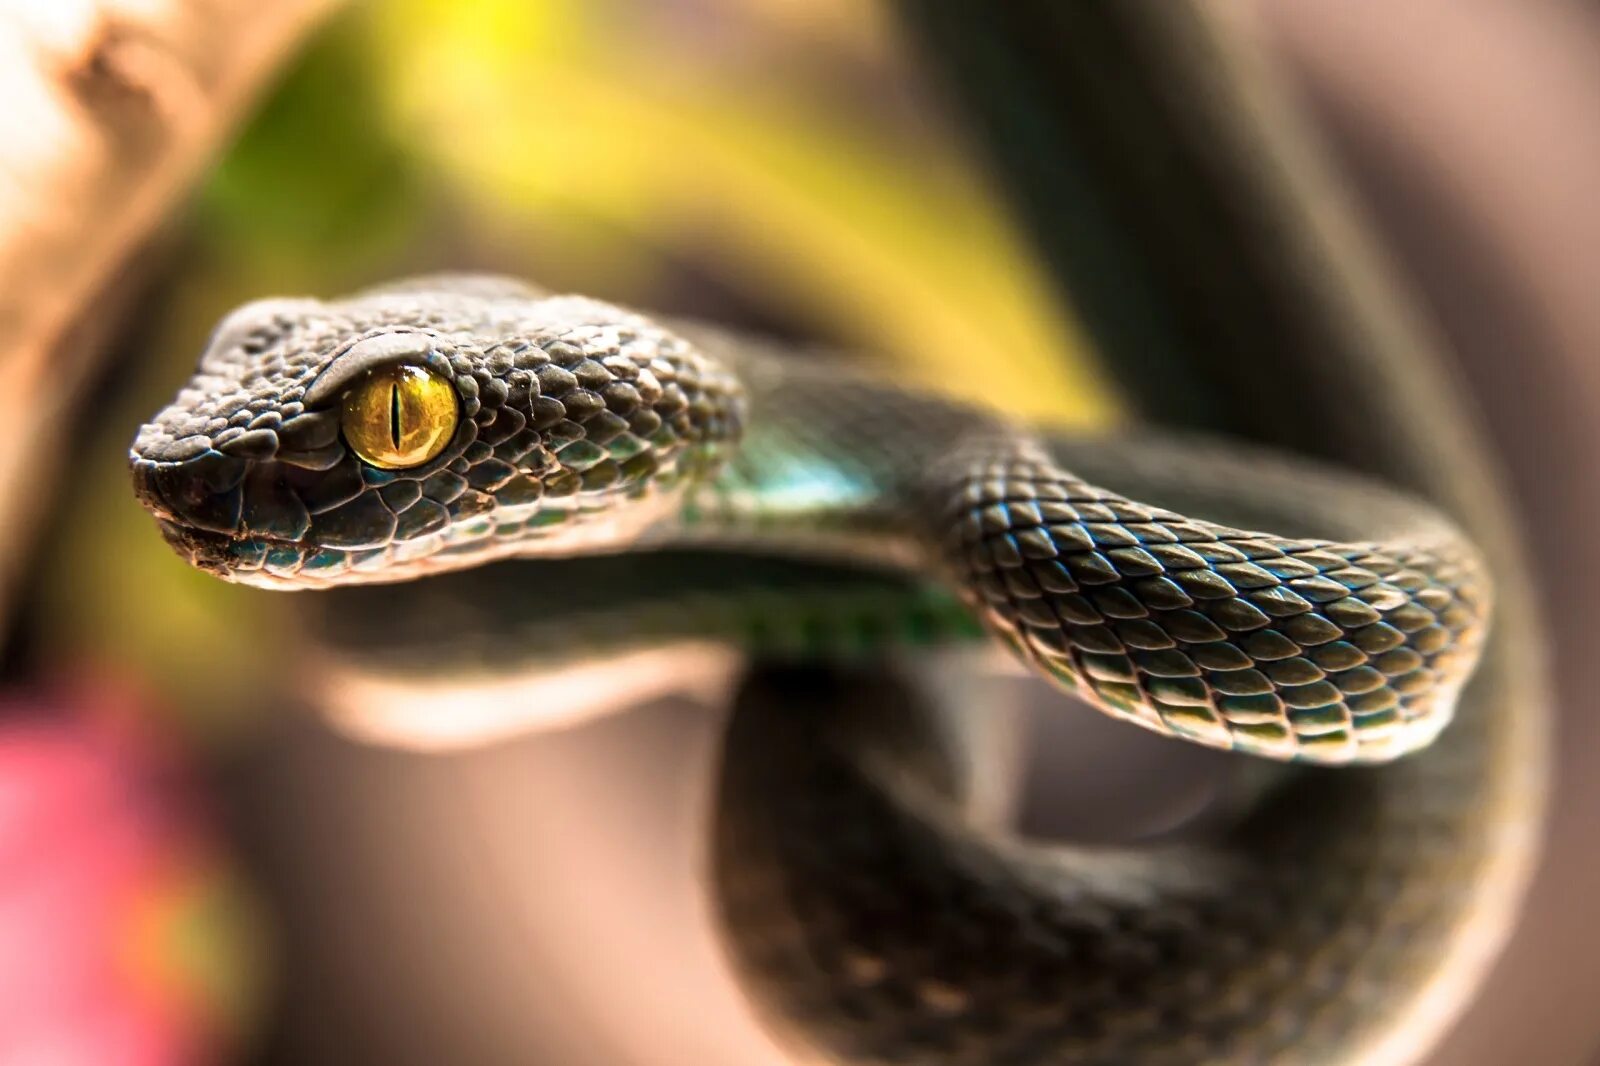 Картинка змея. Всемирный день змеи 16 июля. День змеи 16 июля. Змея с желтыми глазами. Улыбка змеи.